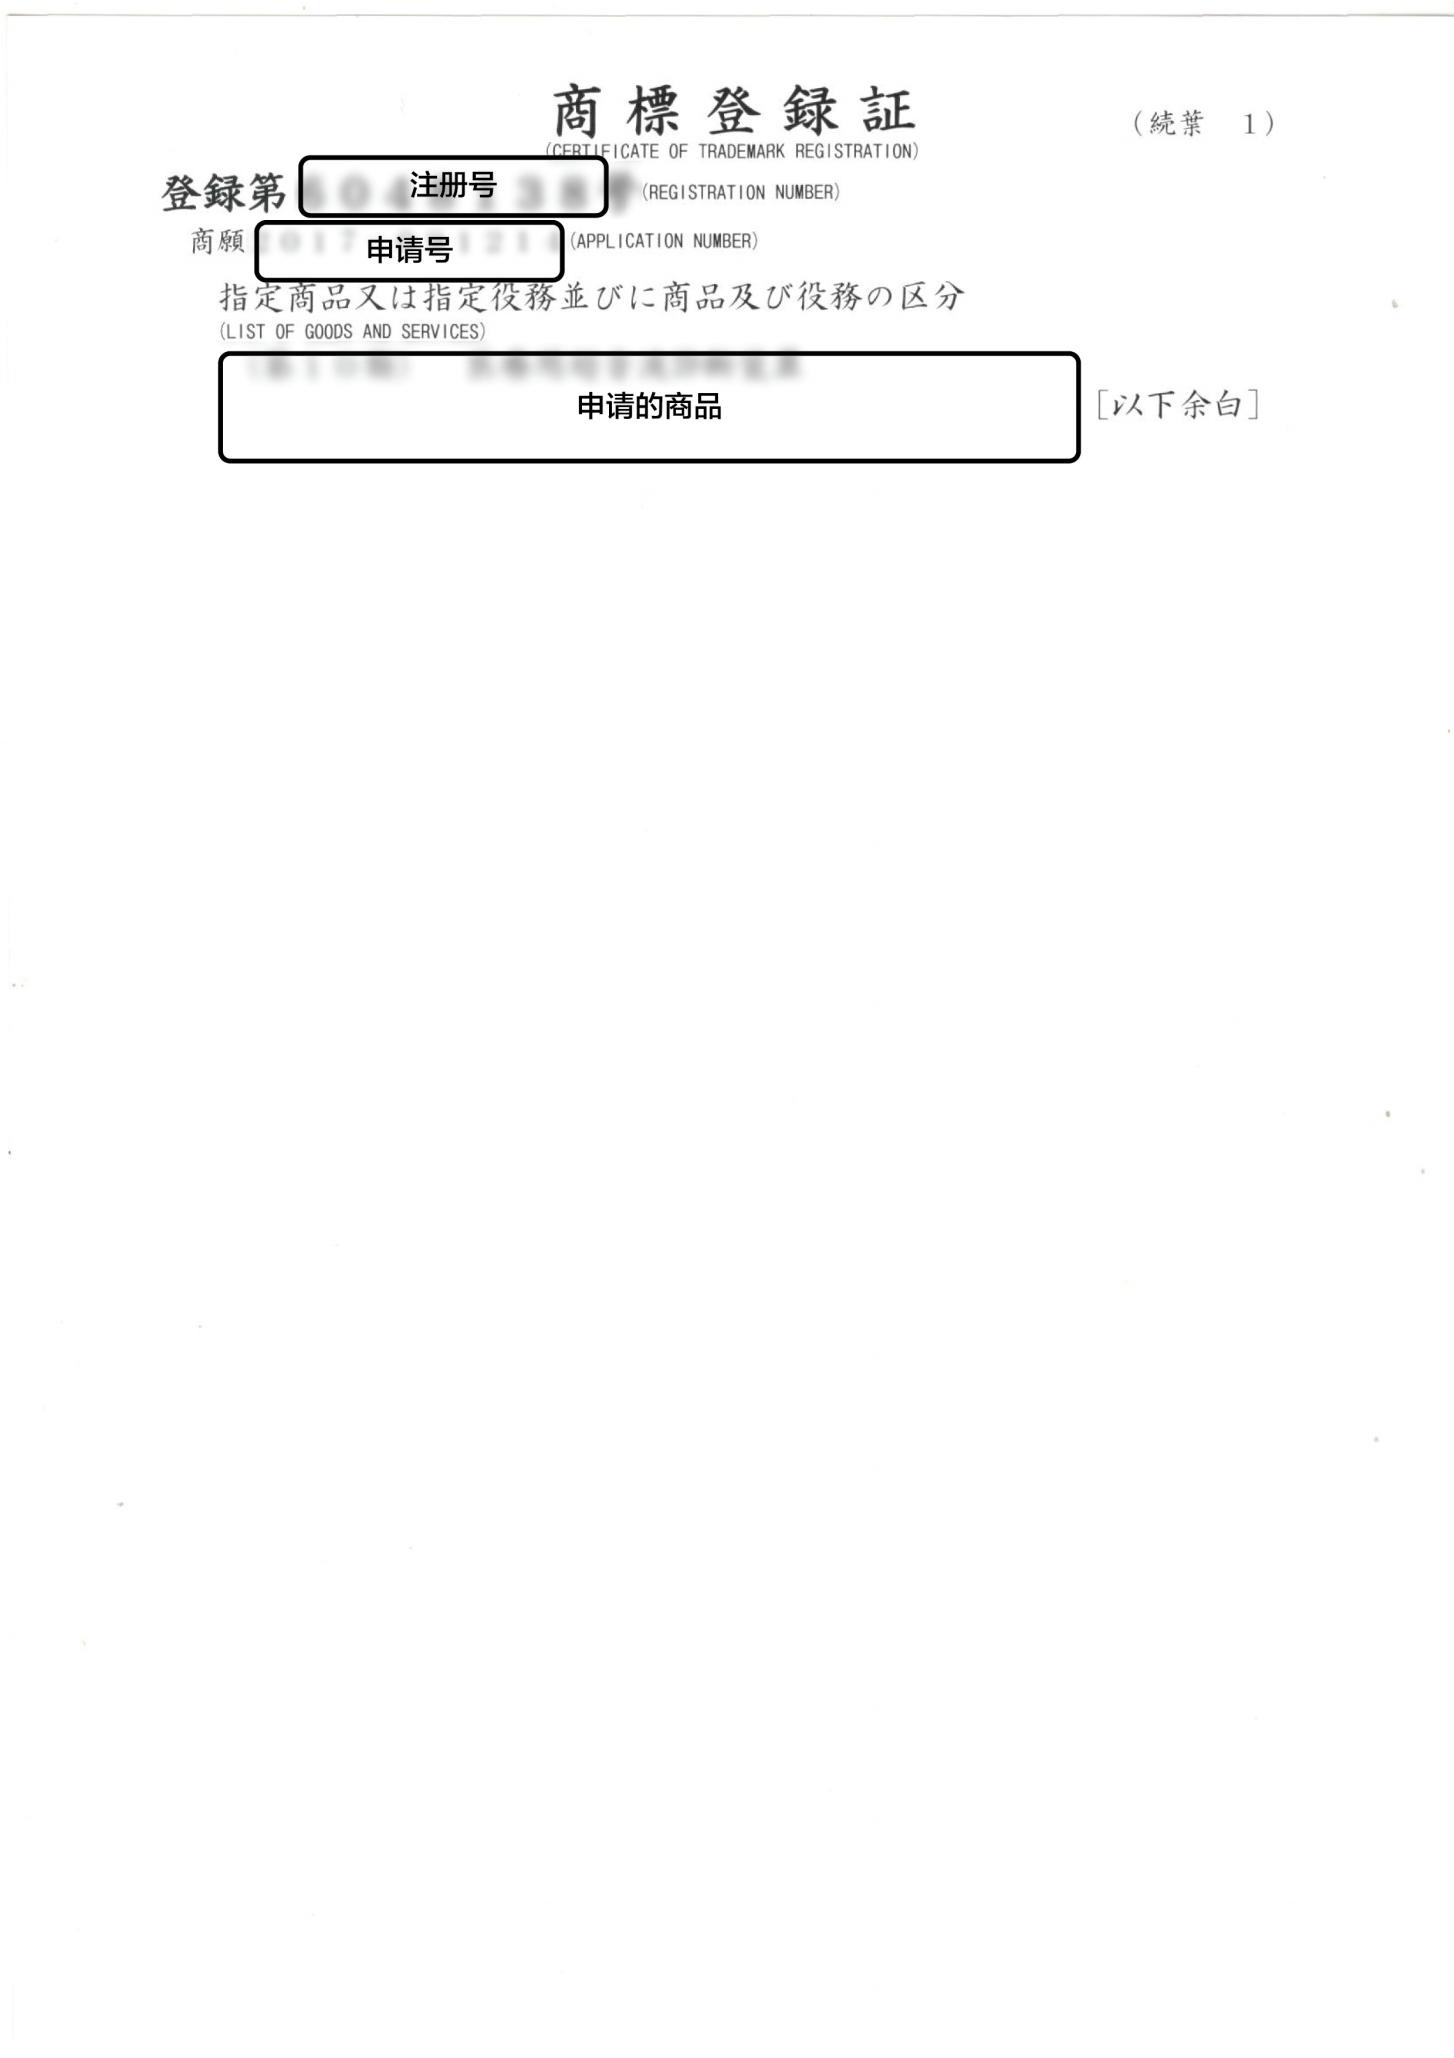 日本注册证样本_01.jpg